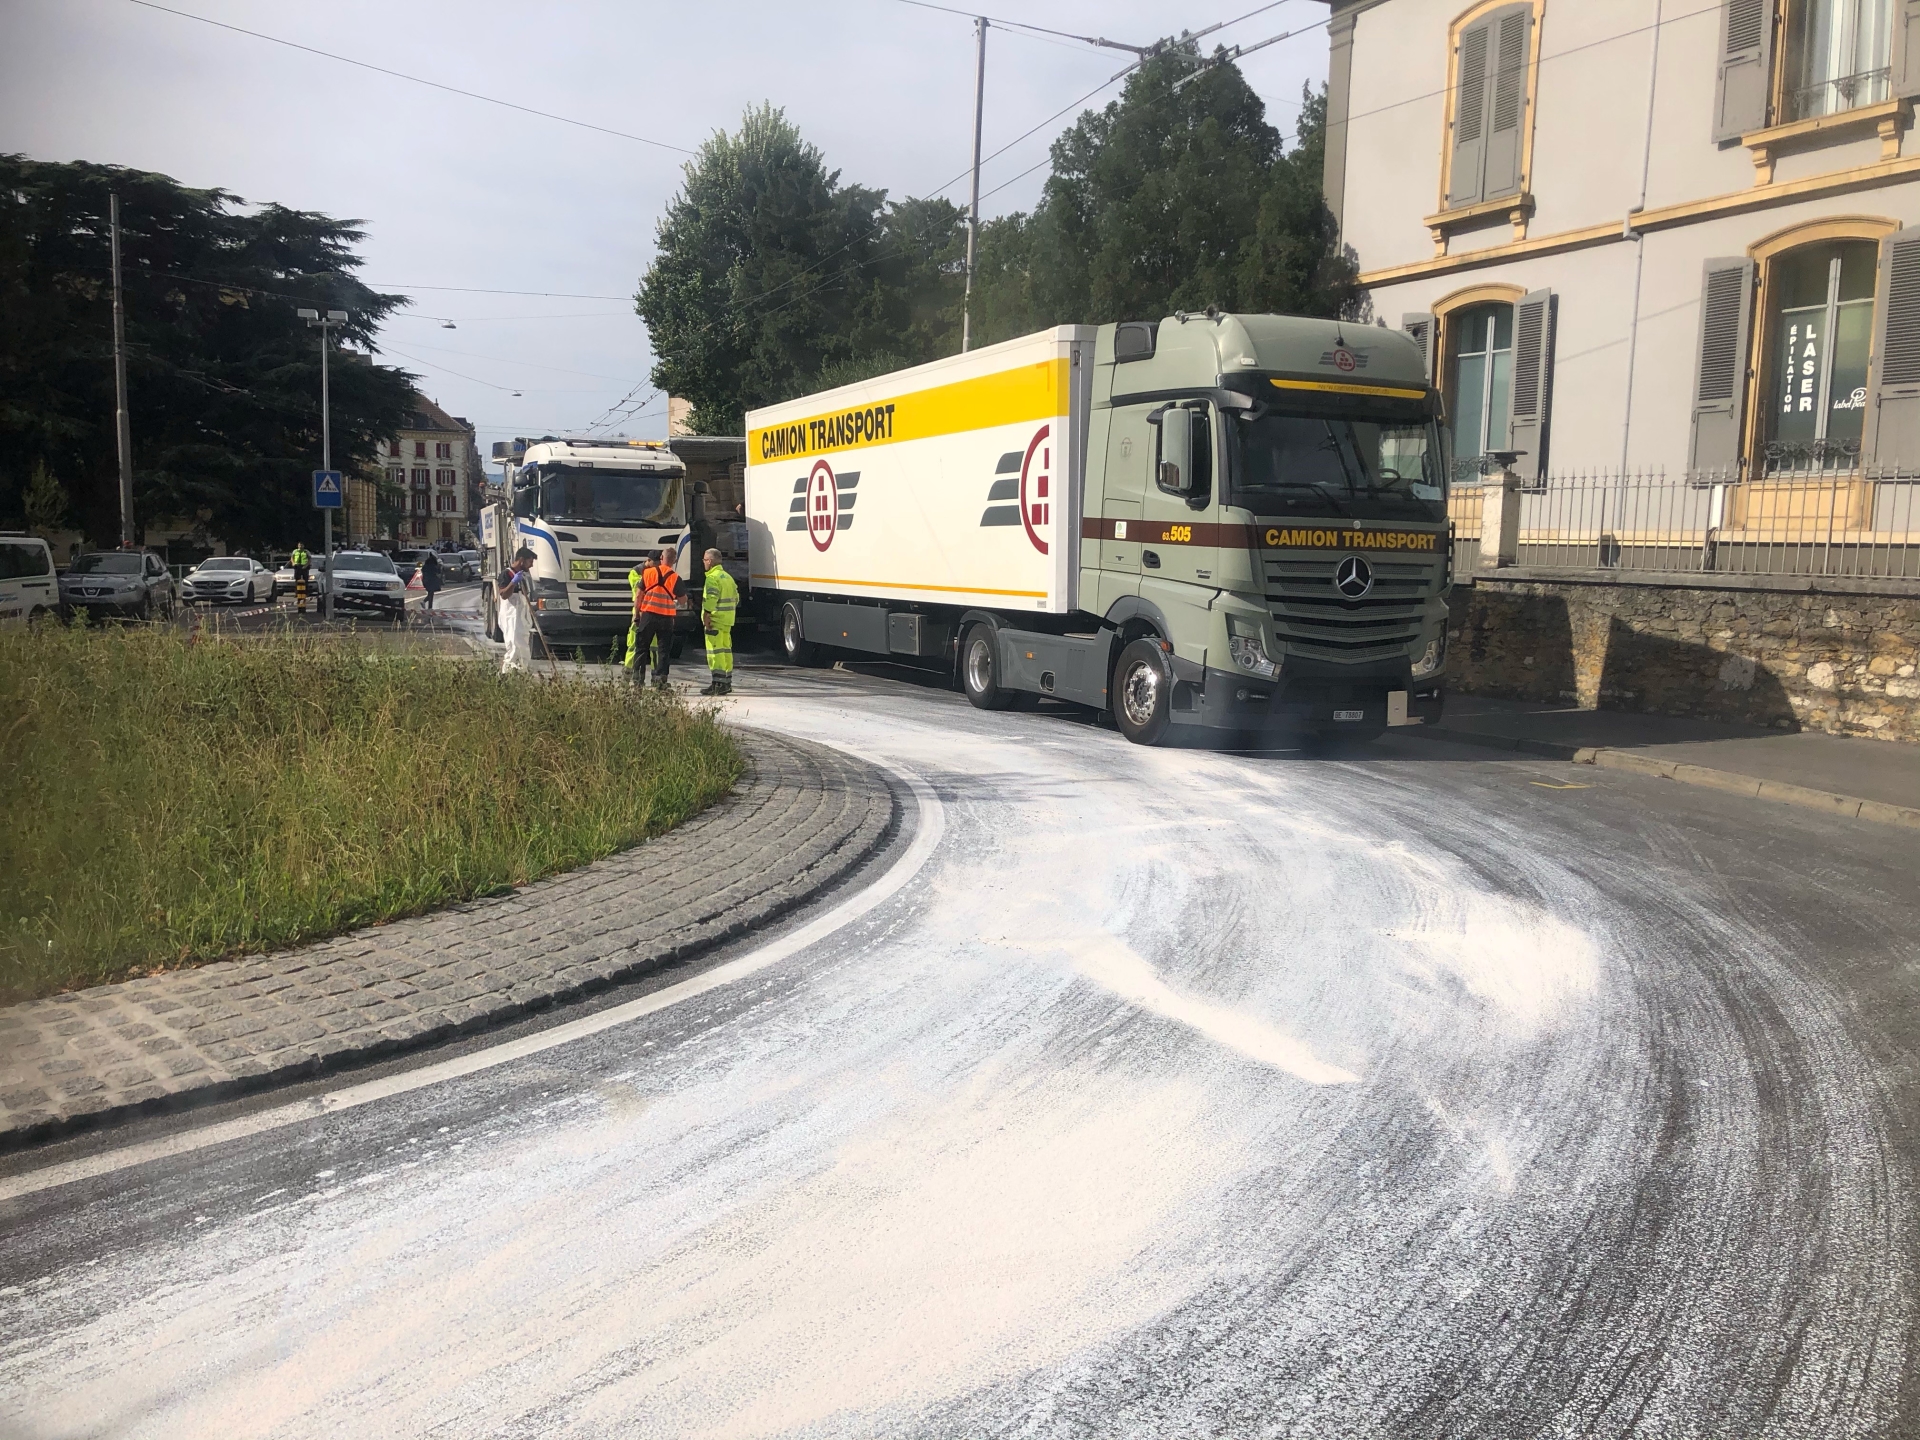 Des camions bloquent, peu avant midi, l'accès au centre-ville de Neuchâtel, tandis que de la peinture blanche a été répandue sur la route.